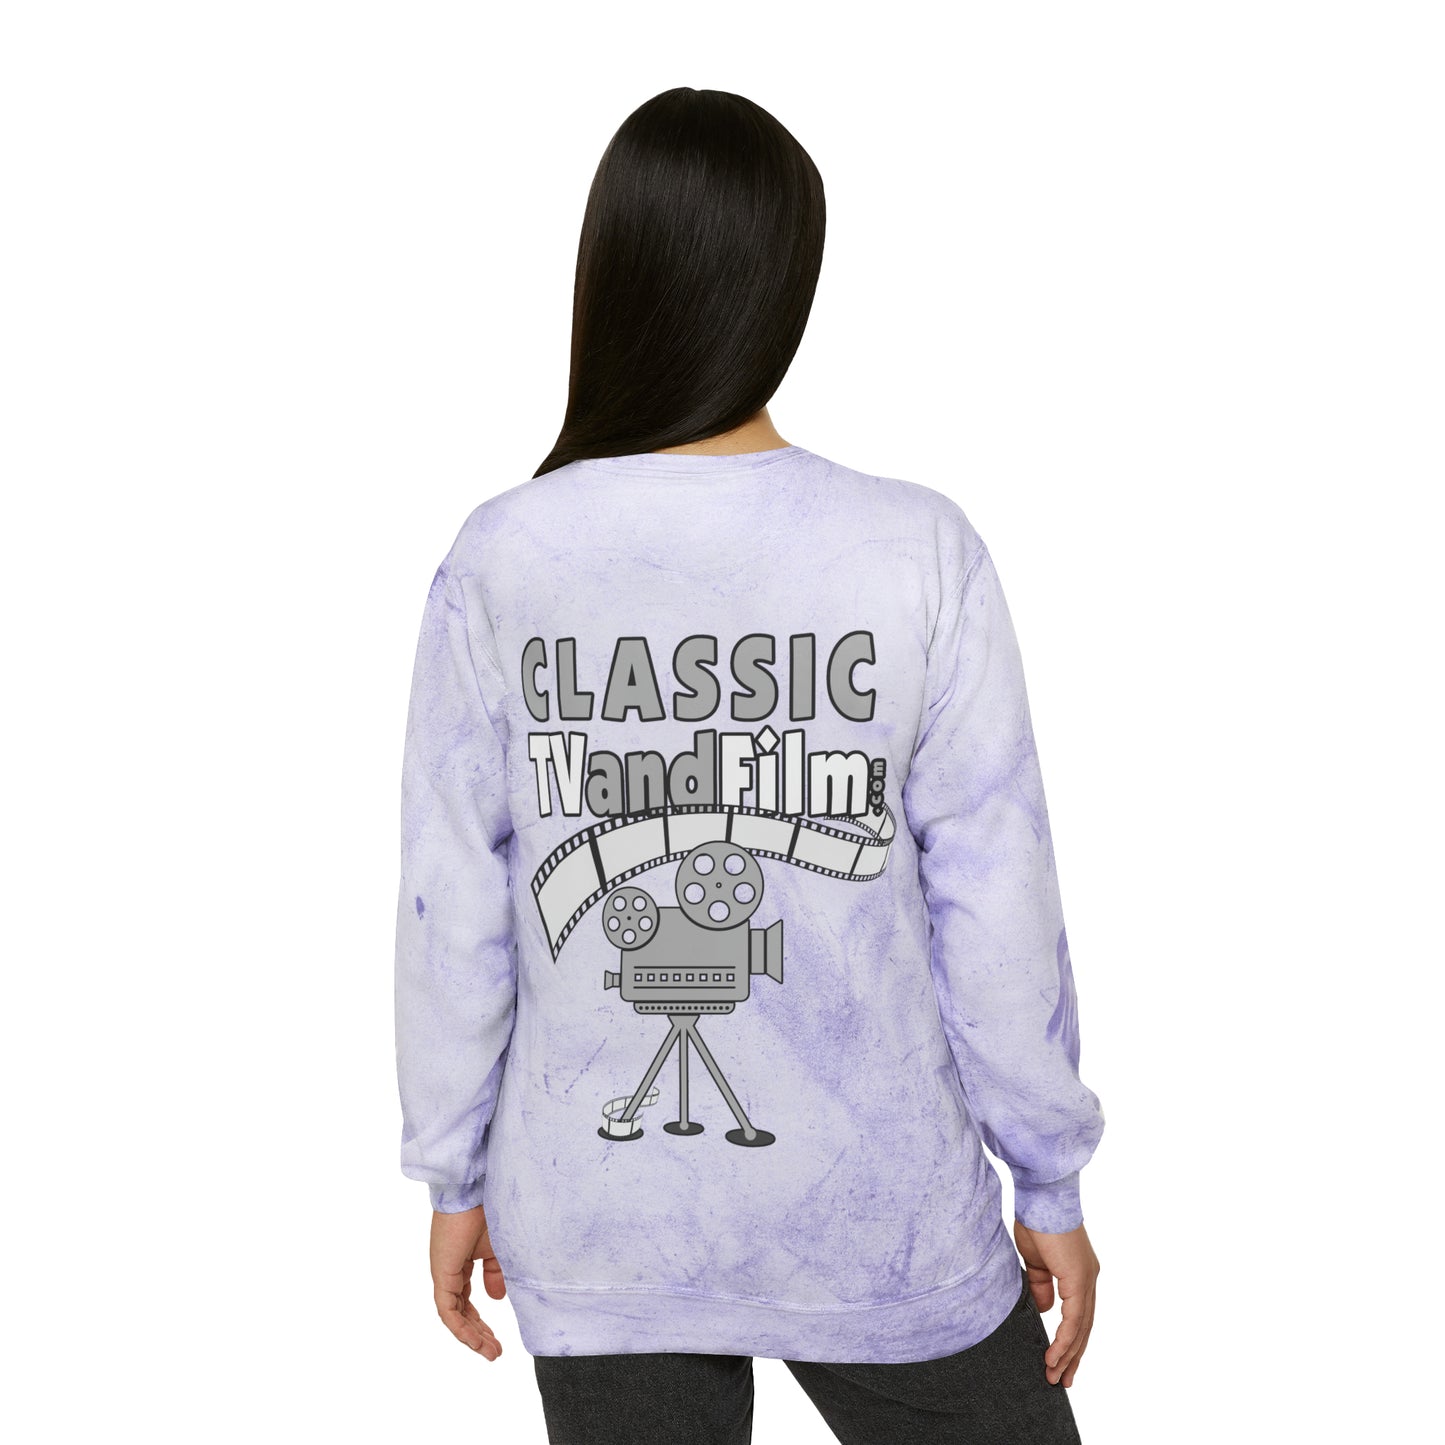 Classic TV & Film - Unisex Color Blast Crewneck Sweatshirt